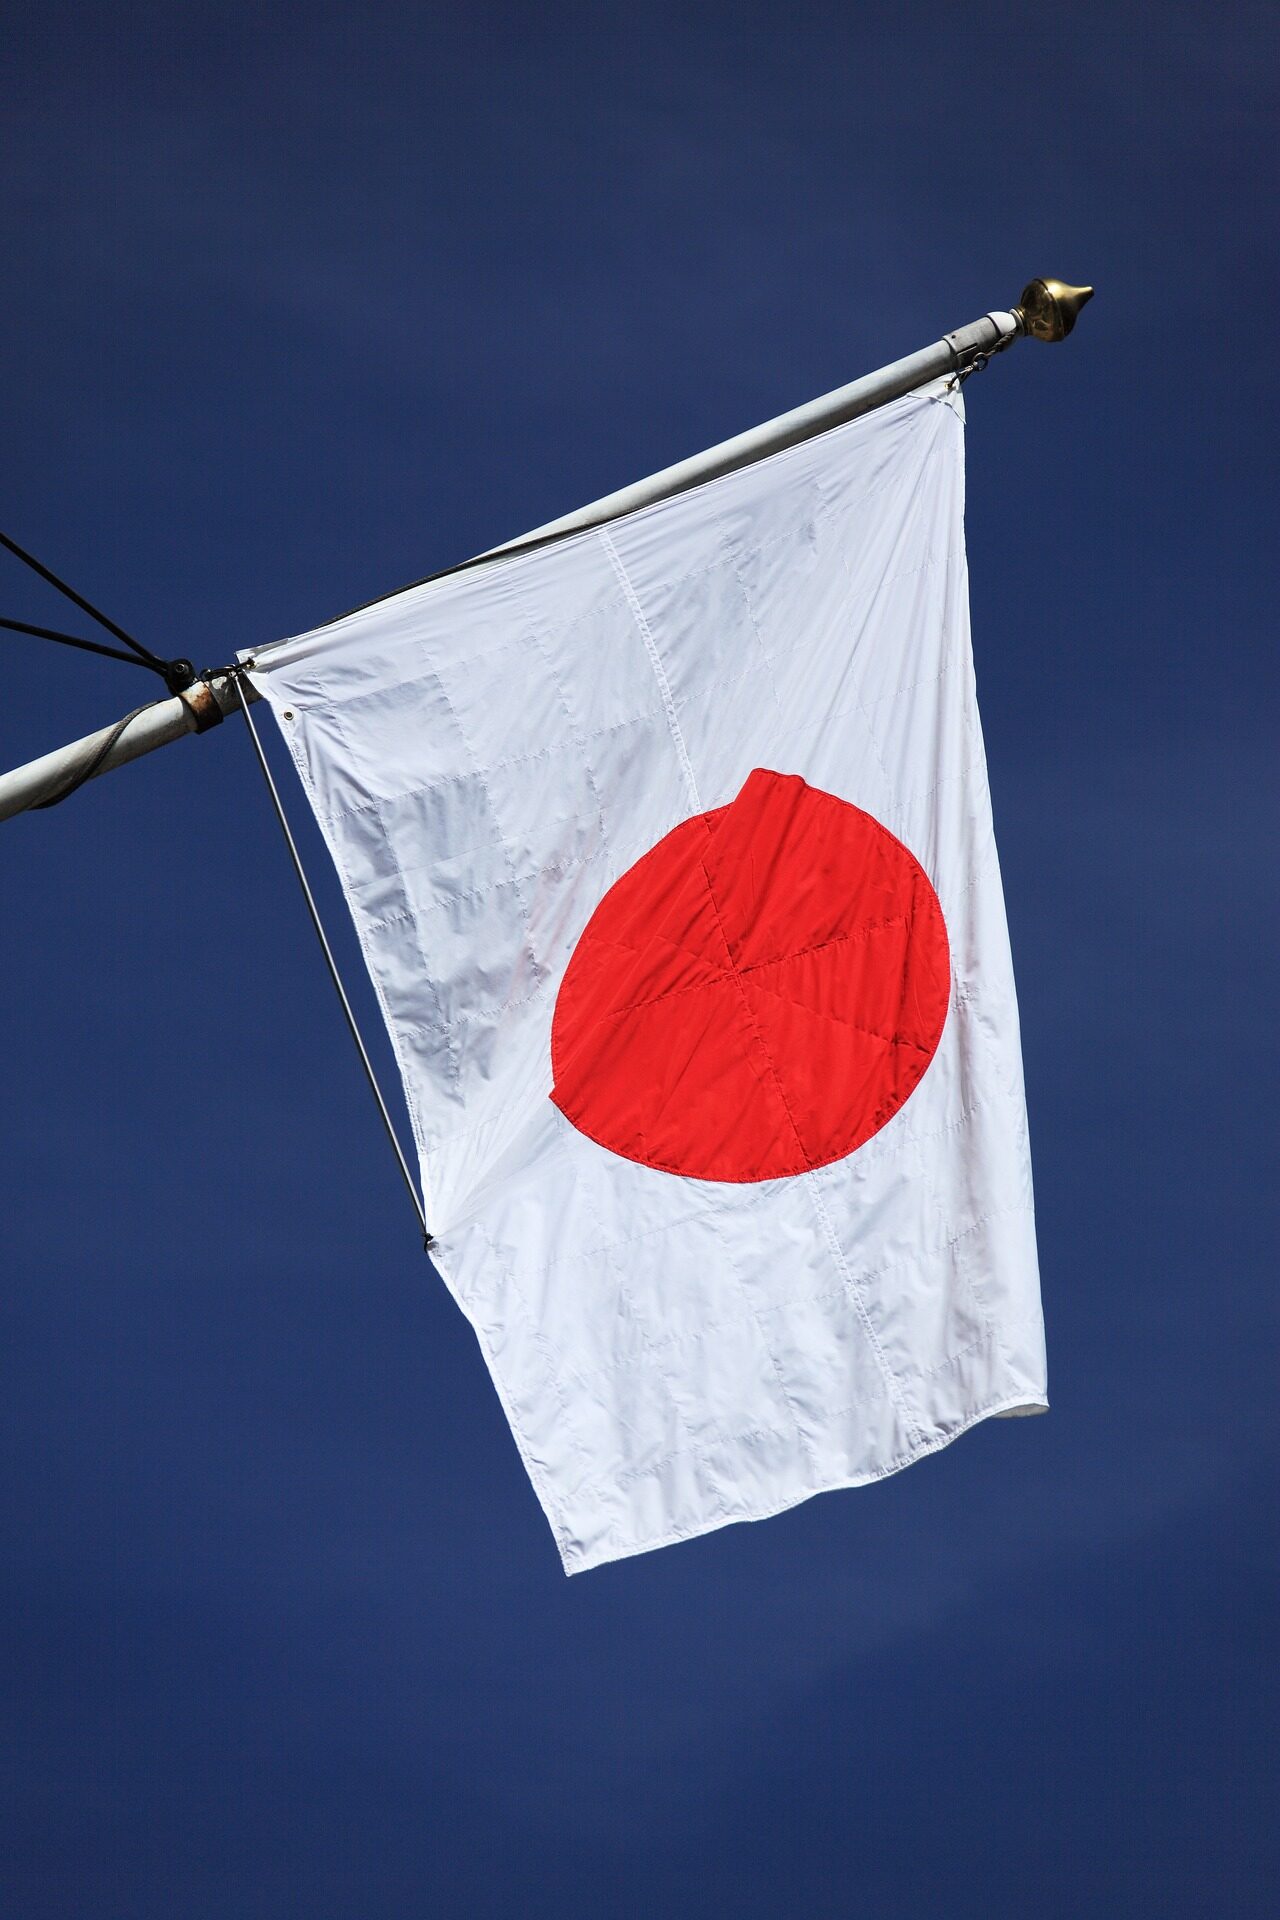 Japon : une secte bouddhiste enquête sur des accusations d'agression sexuelle d'une religieuse